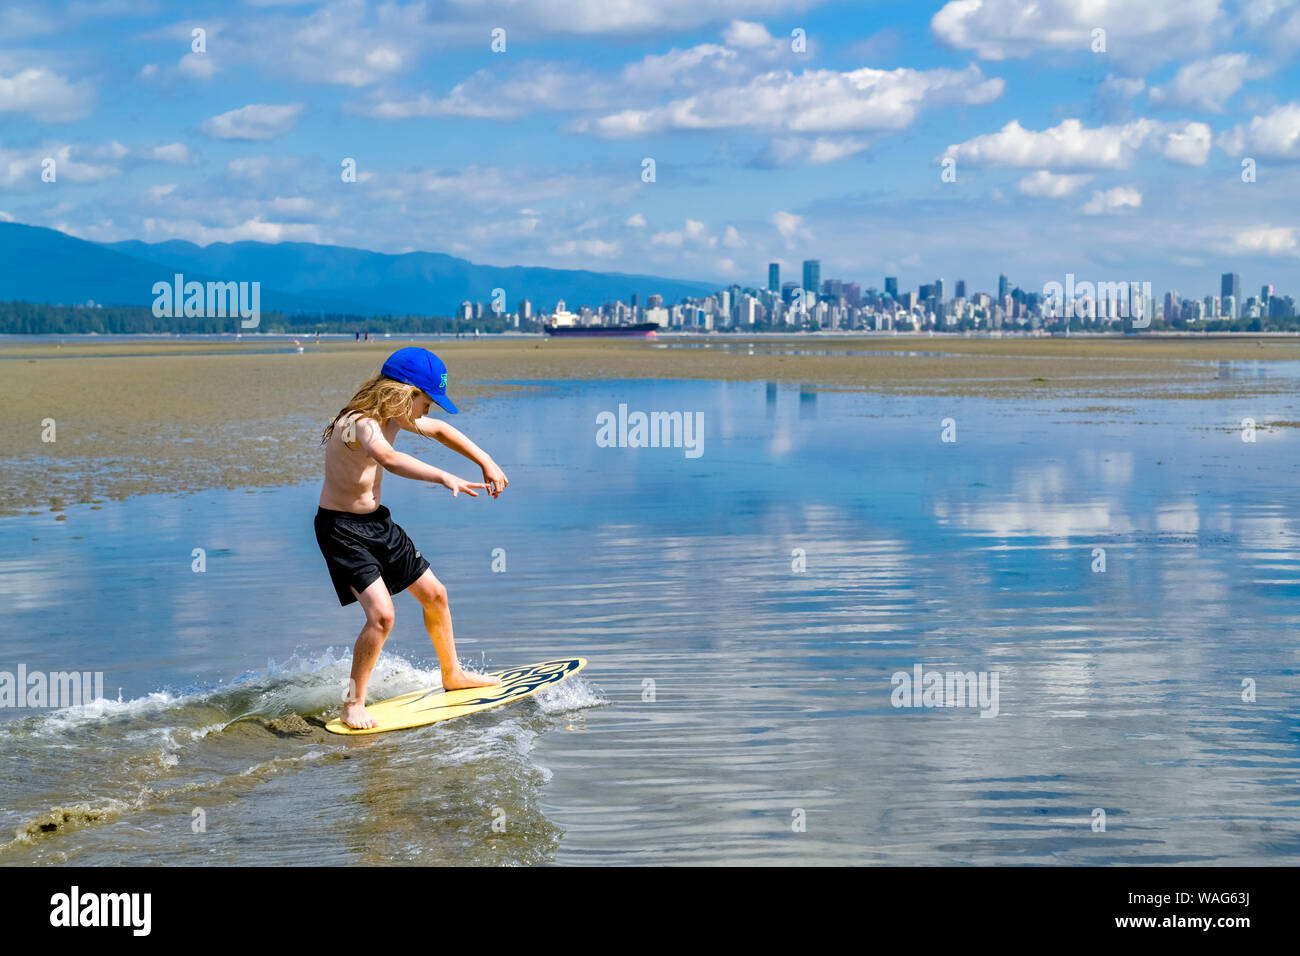 Jeune garçon aux cheveux longs, skimboarding banques espagnoles, English Bay, Vancouver, British Columbia, Canada Banque D'Images